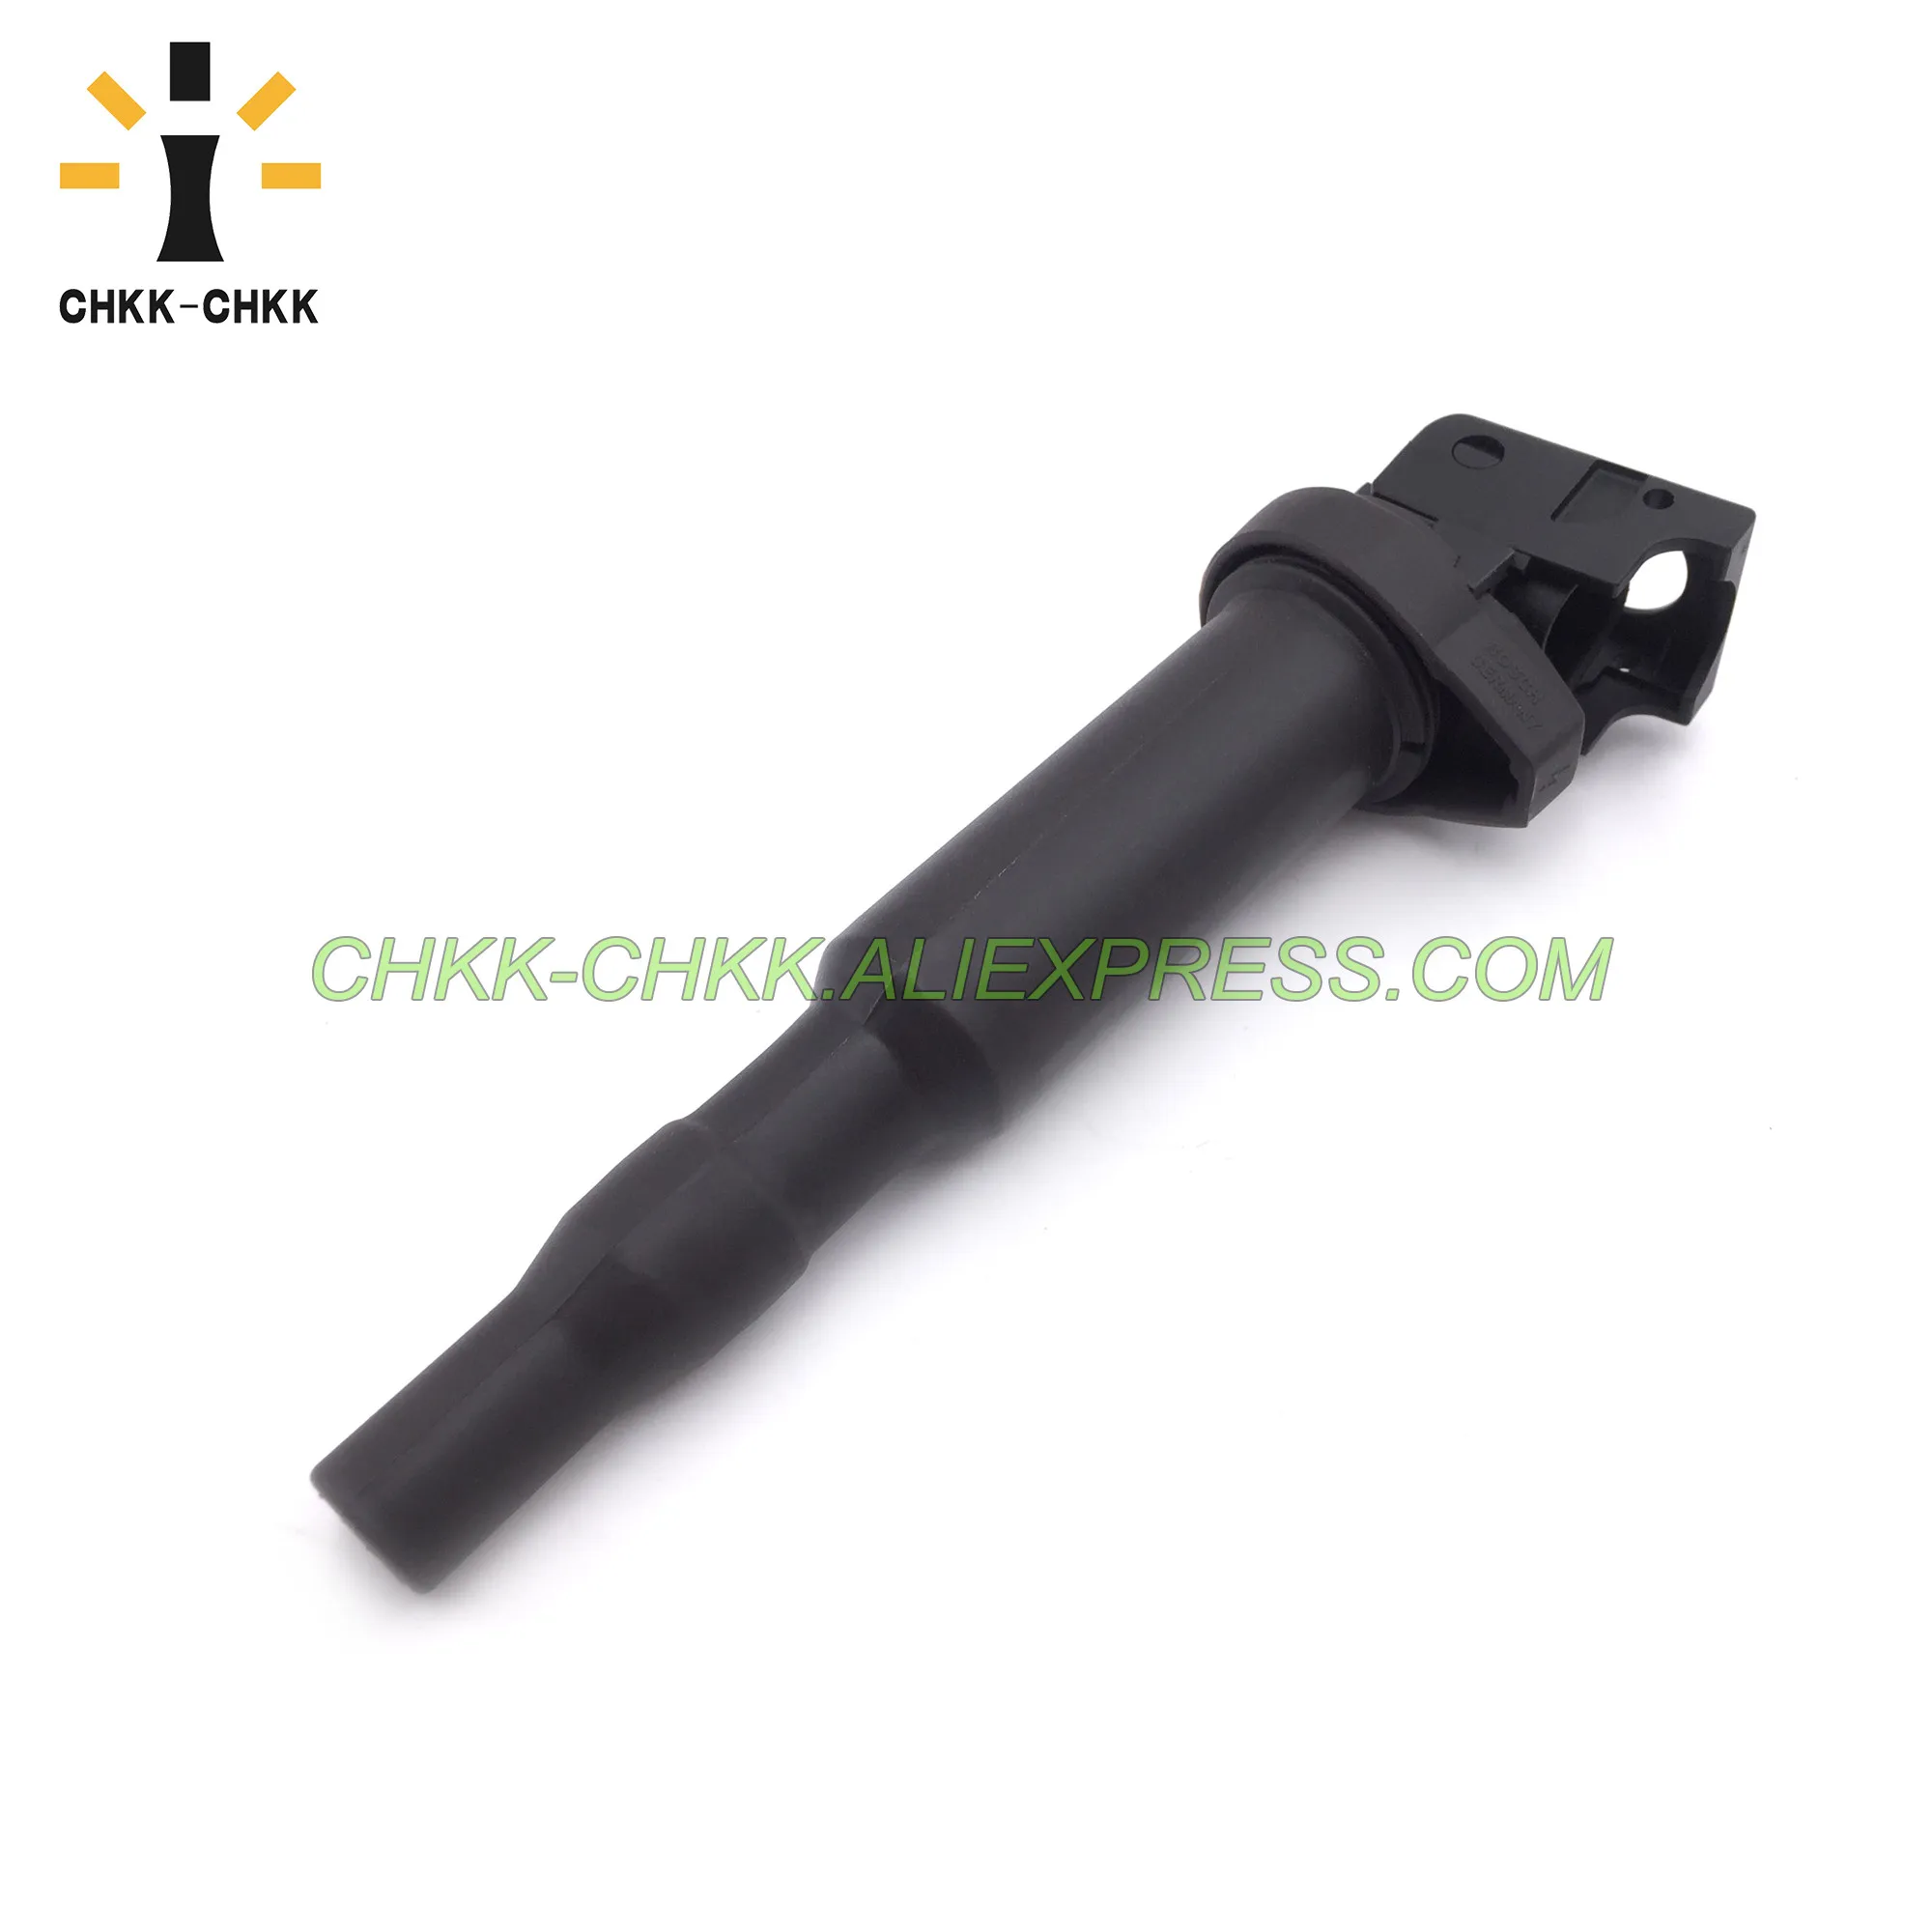 

CHKK-CHKK new Ignition Coil OEM 0221504470 12137594937 for BOSCH BMW E46 E60 E85 E90 128i 335is 528i 535i